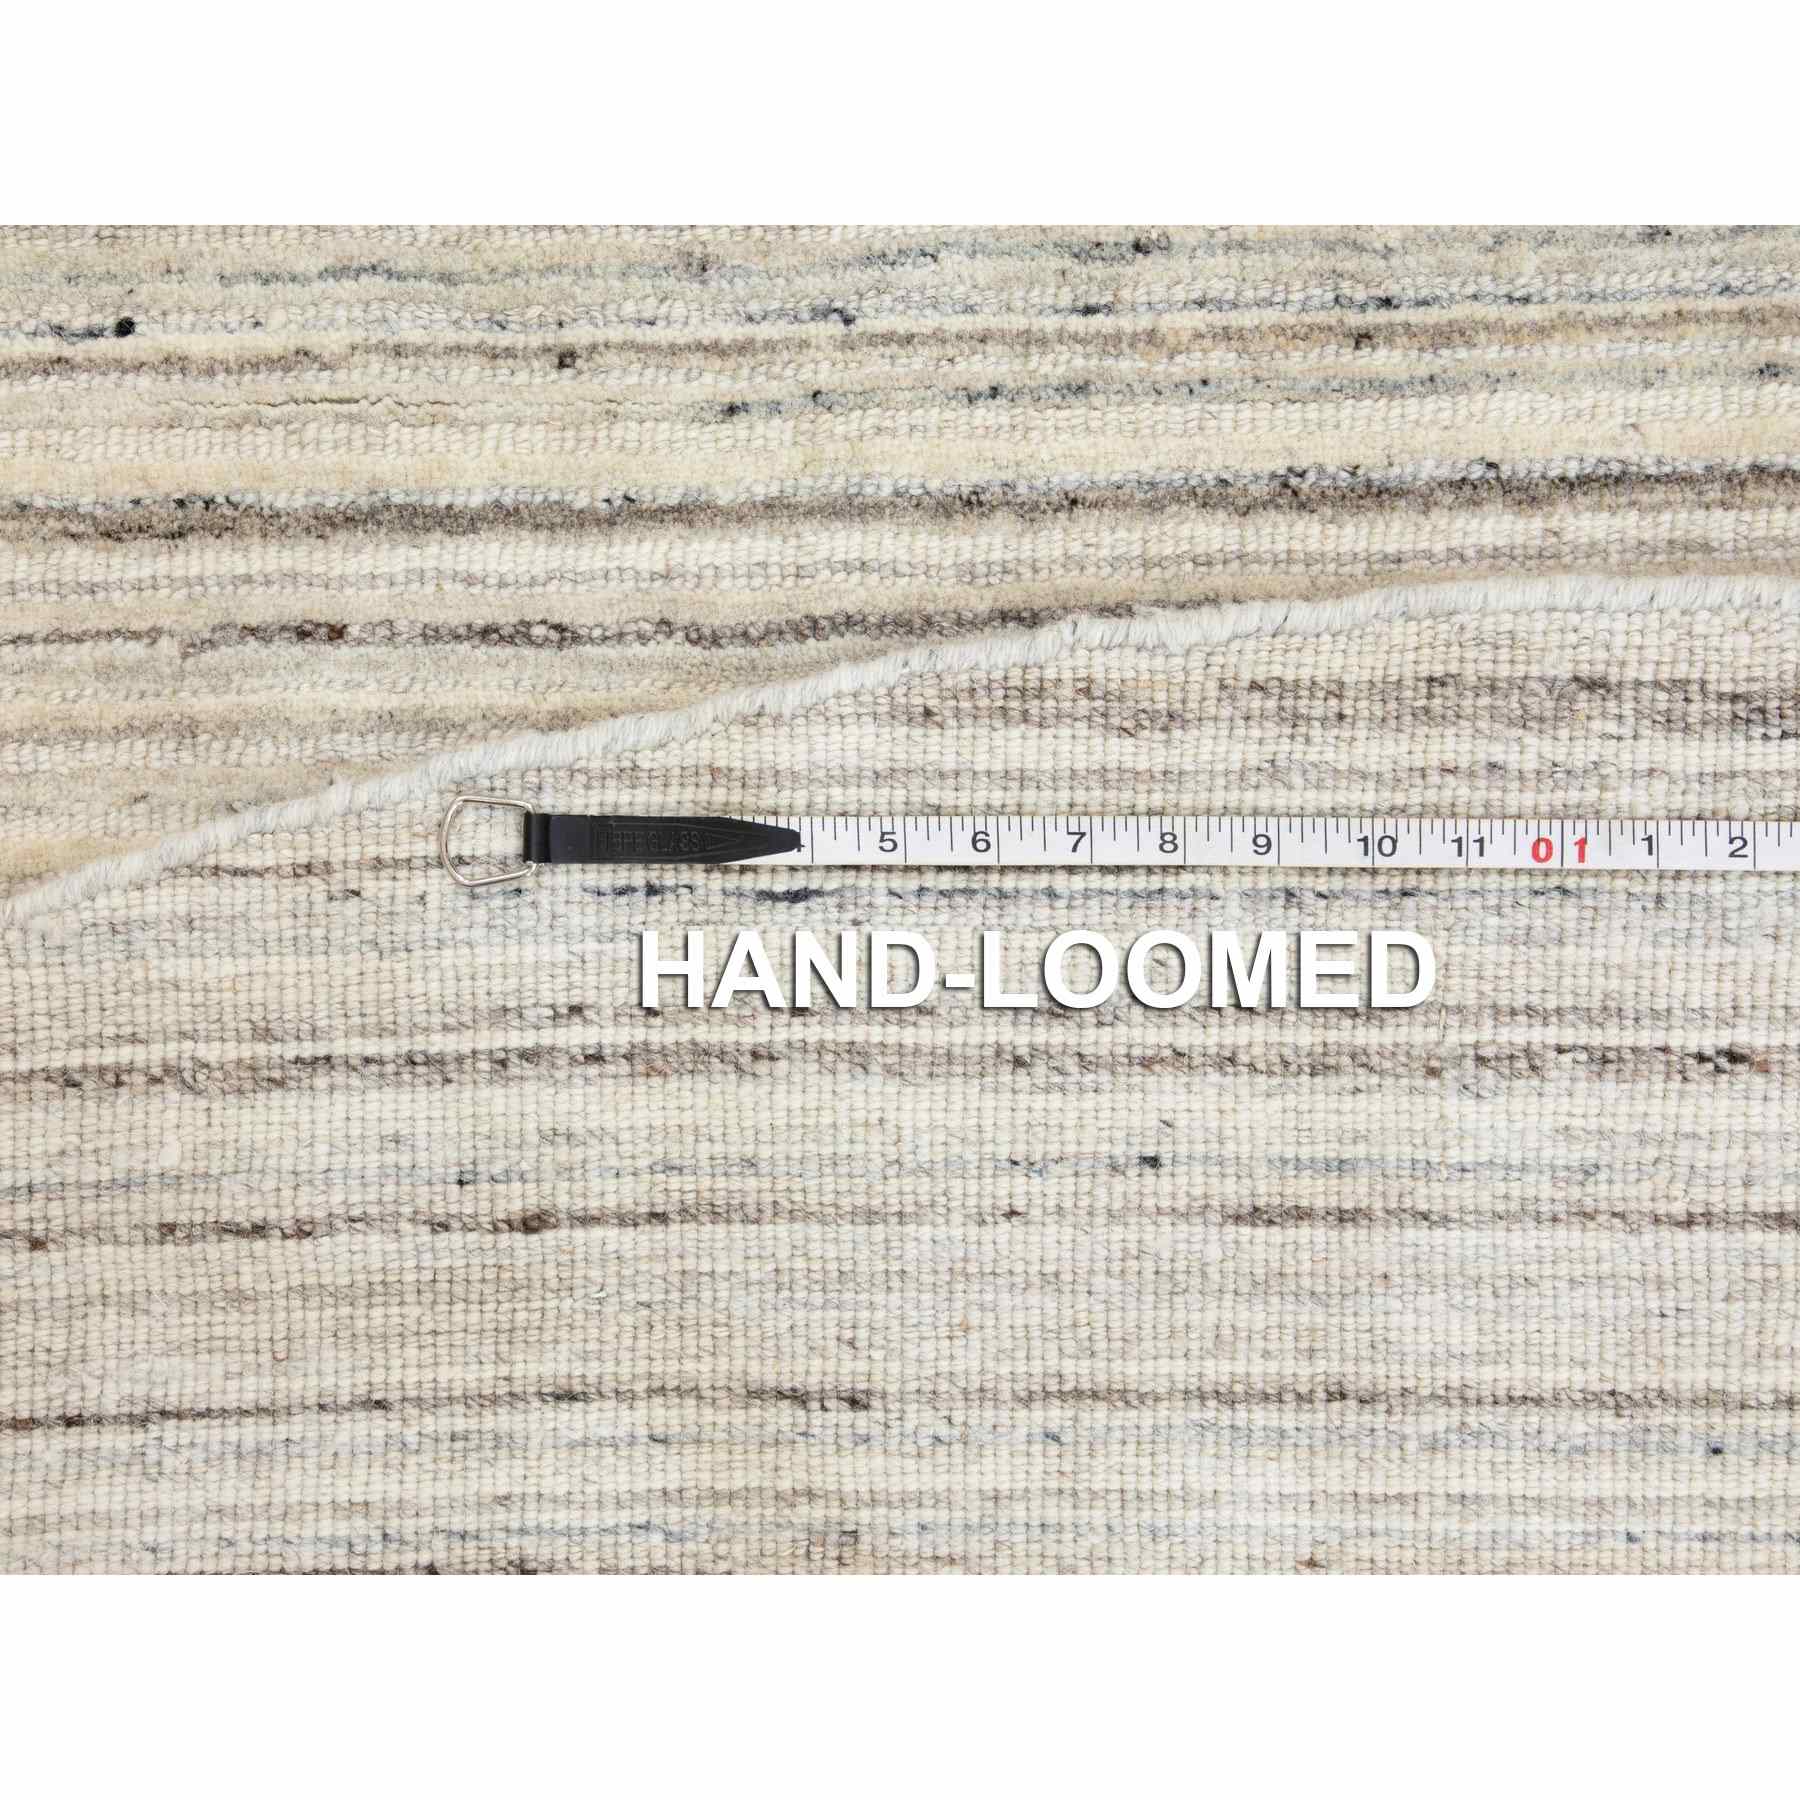 Hand-Loomed-Hand-Loomed-Rug-291750